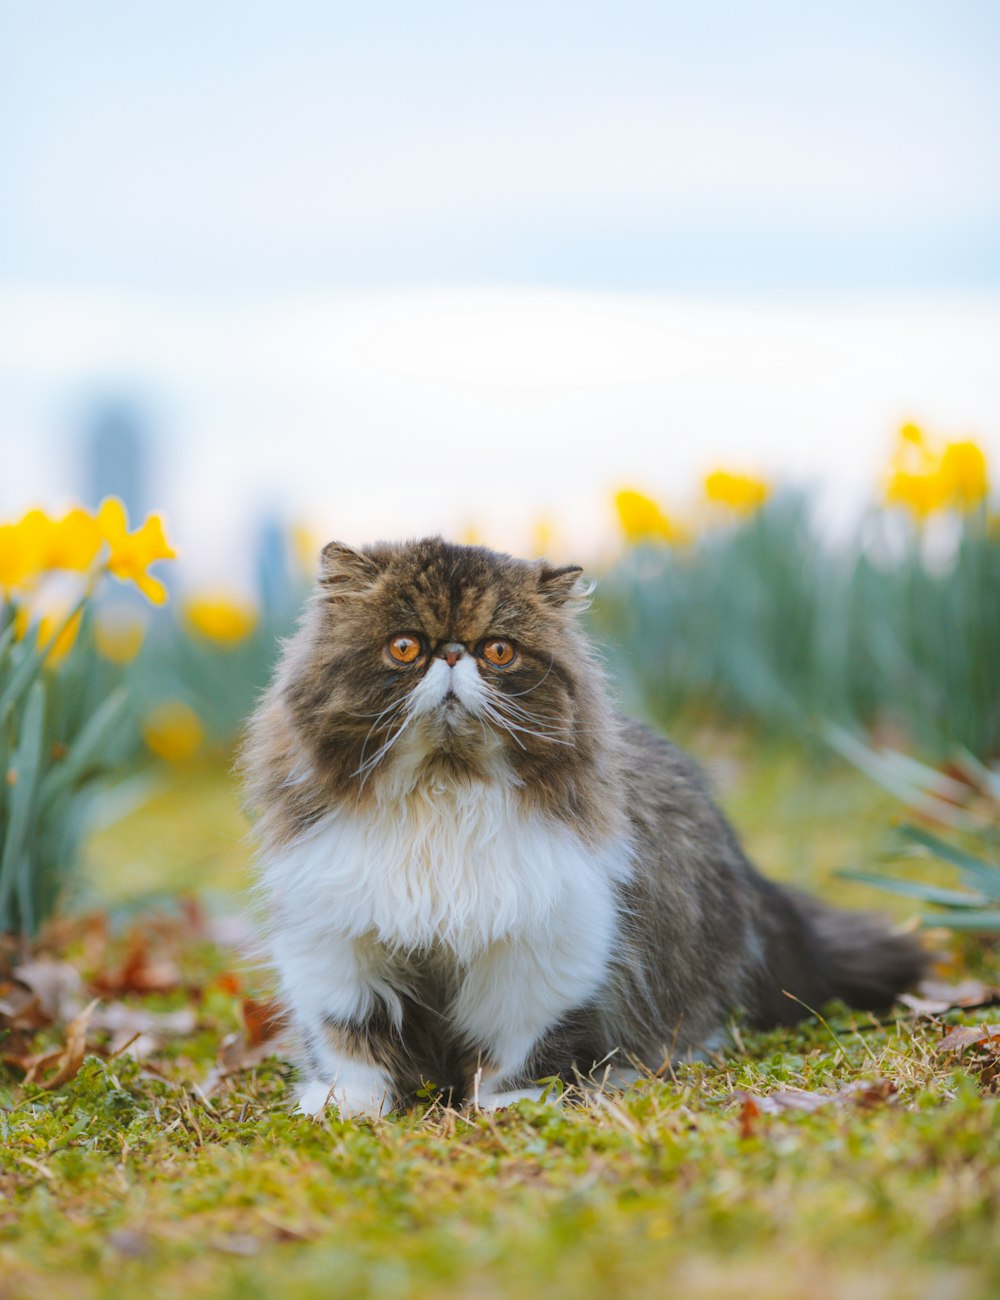 꽃밭에 앉아 있는 푹신한 고양이